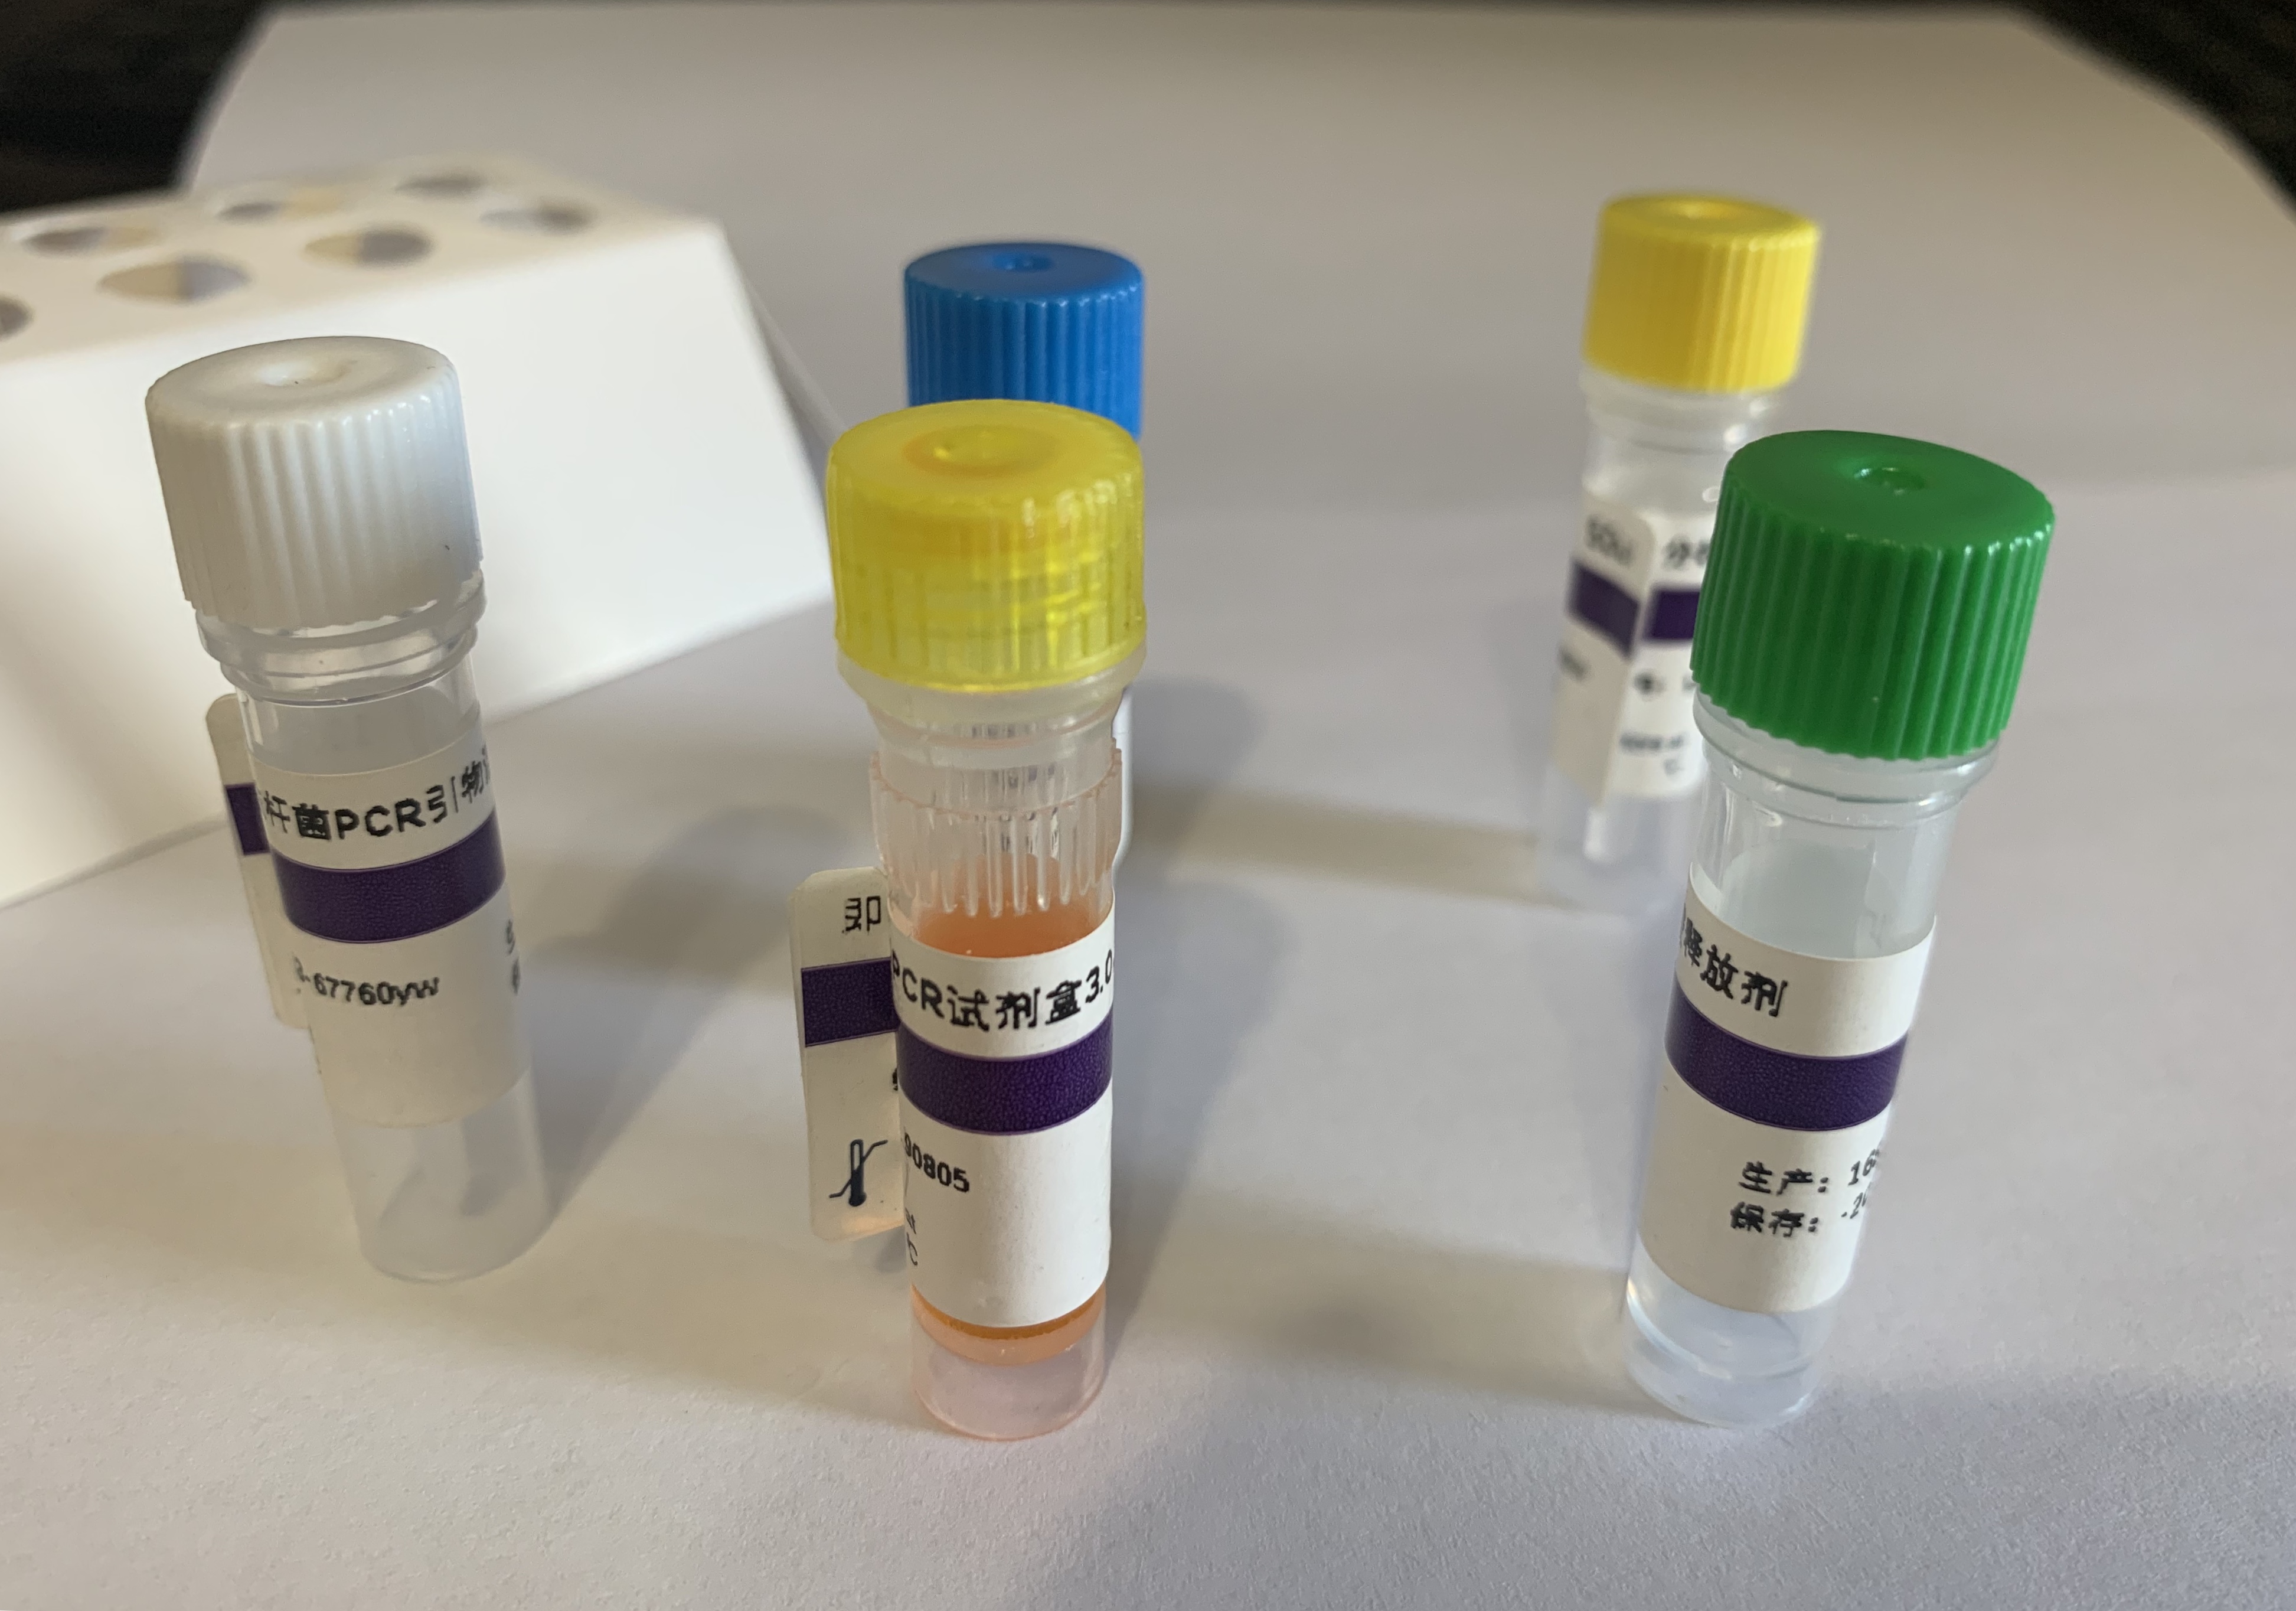 流感嗜血杆菌B型PCR试剂盒